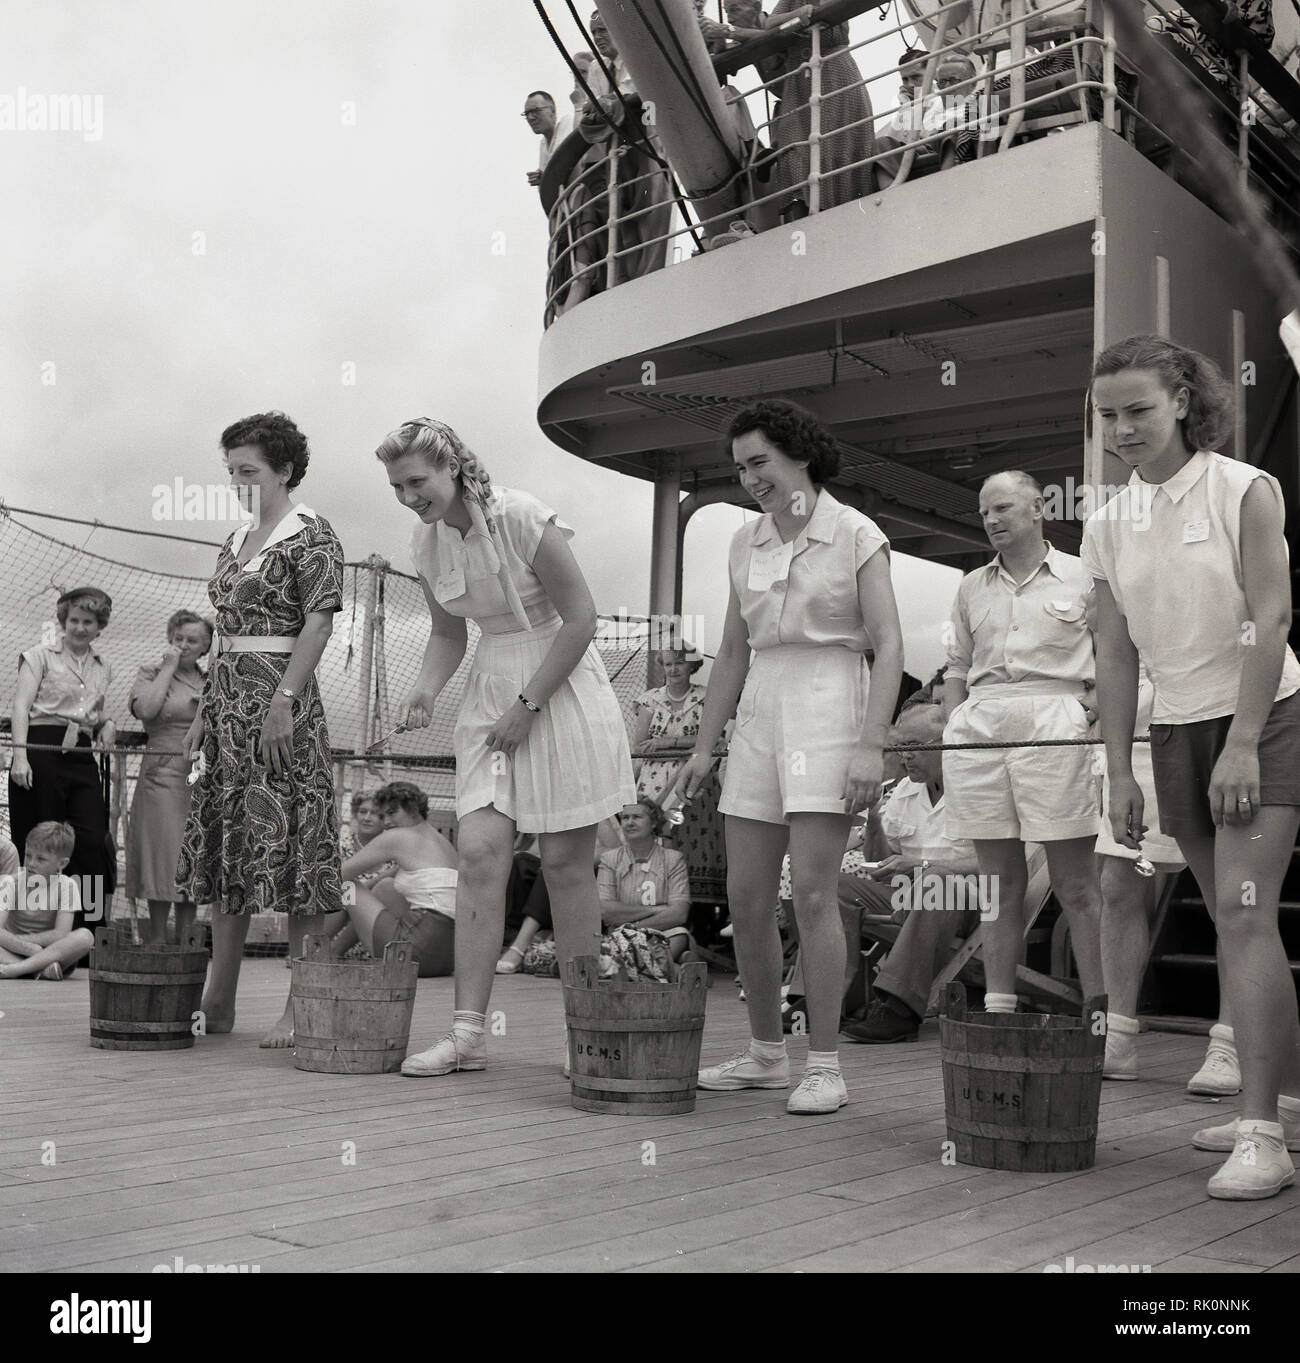 Degli anni Cinquanta, storico, femmina i passeggeri con piccole botti di legno accanto a loro di prendere parte un gioco di coperta a bordo di un battello a vapore Union-Caste. Foto Stock